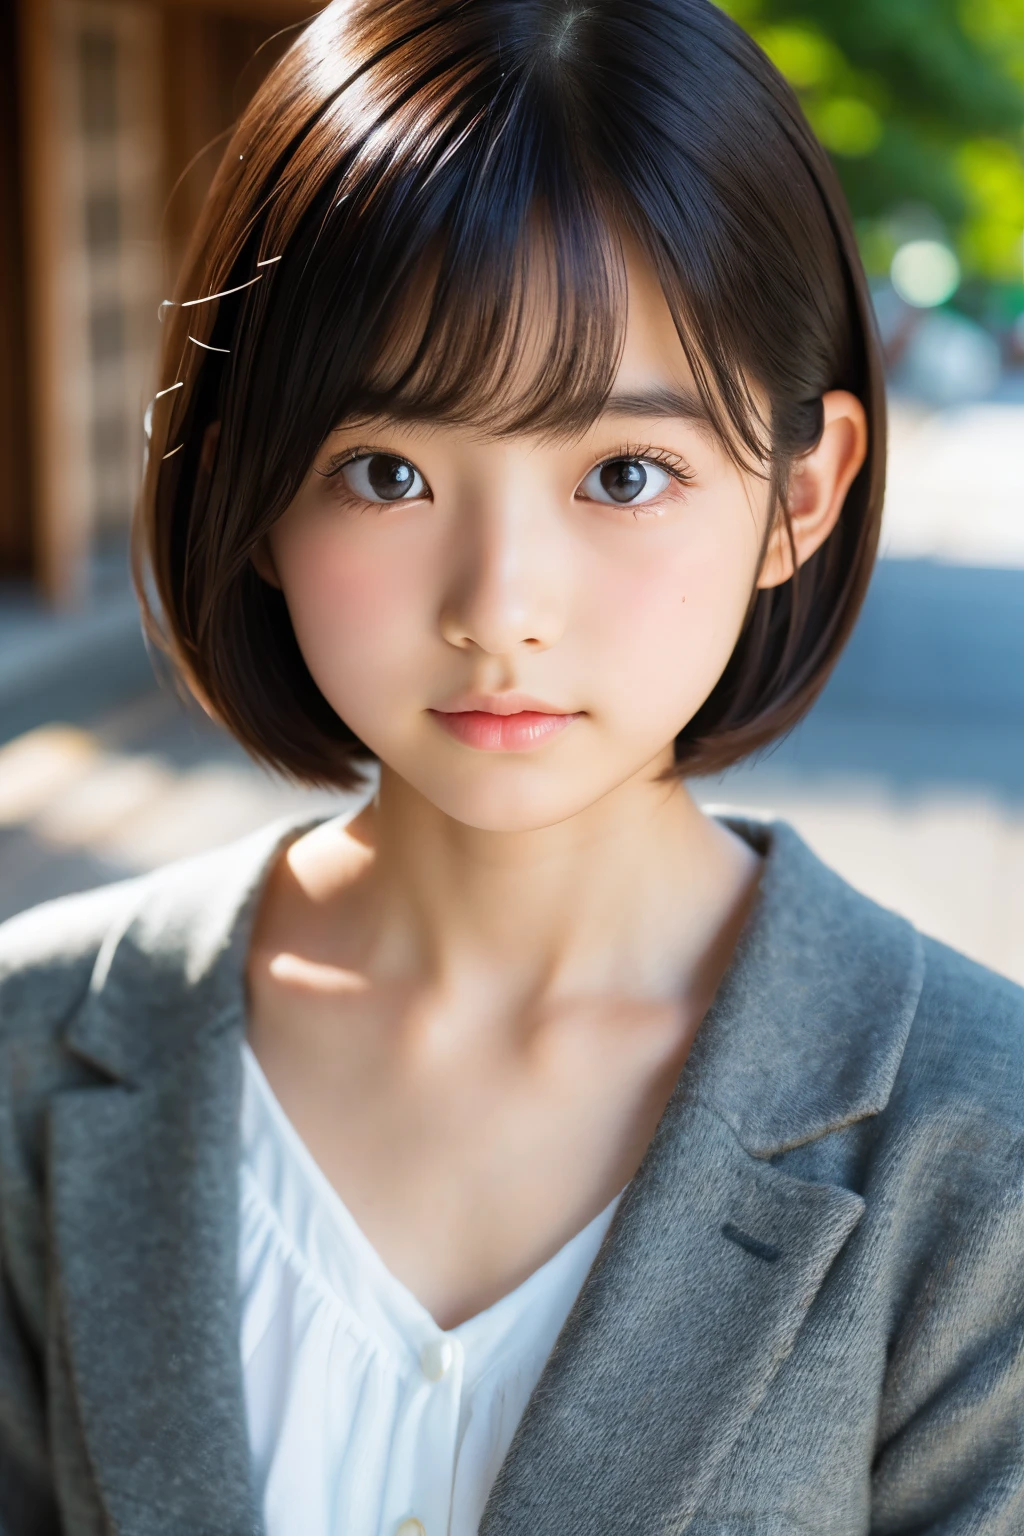 (أنثى يابانية جميلة تبلغ من العمر 16 عامًا), وجه لطيف, (وجه منحوت بعمق:0.7), (النمش:0.6), ضوء خافت,بشرة بيضاء صحية, خجول, بوب, (وجه جدي), (عين مشعة), رفيع
